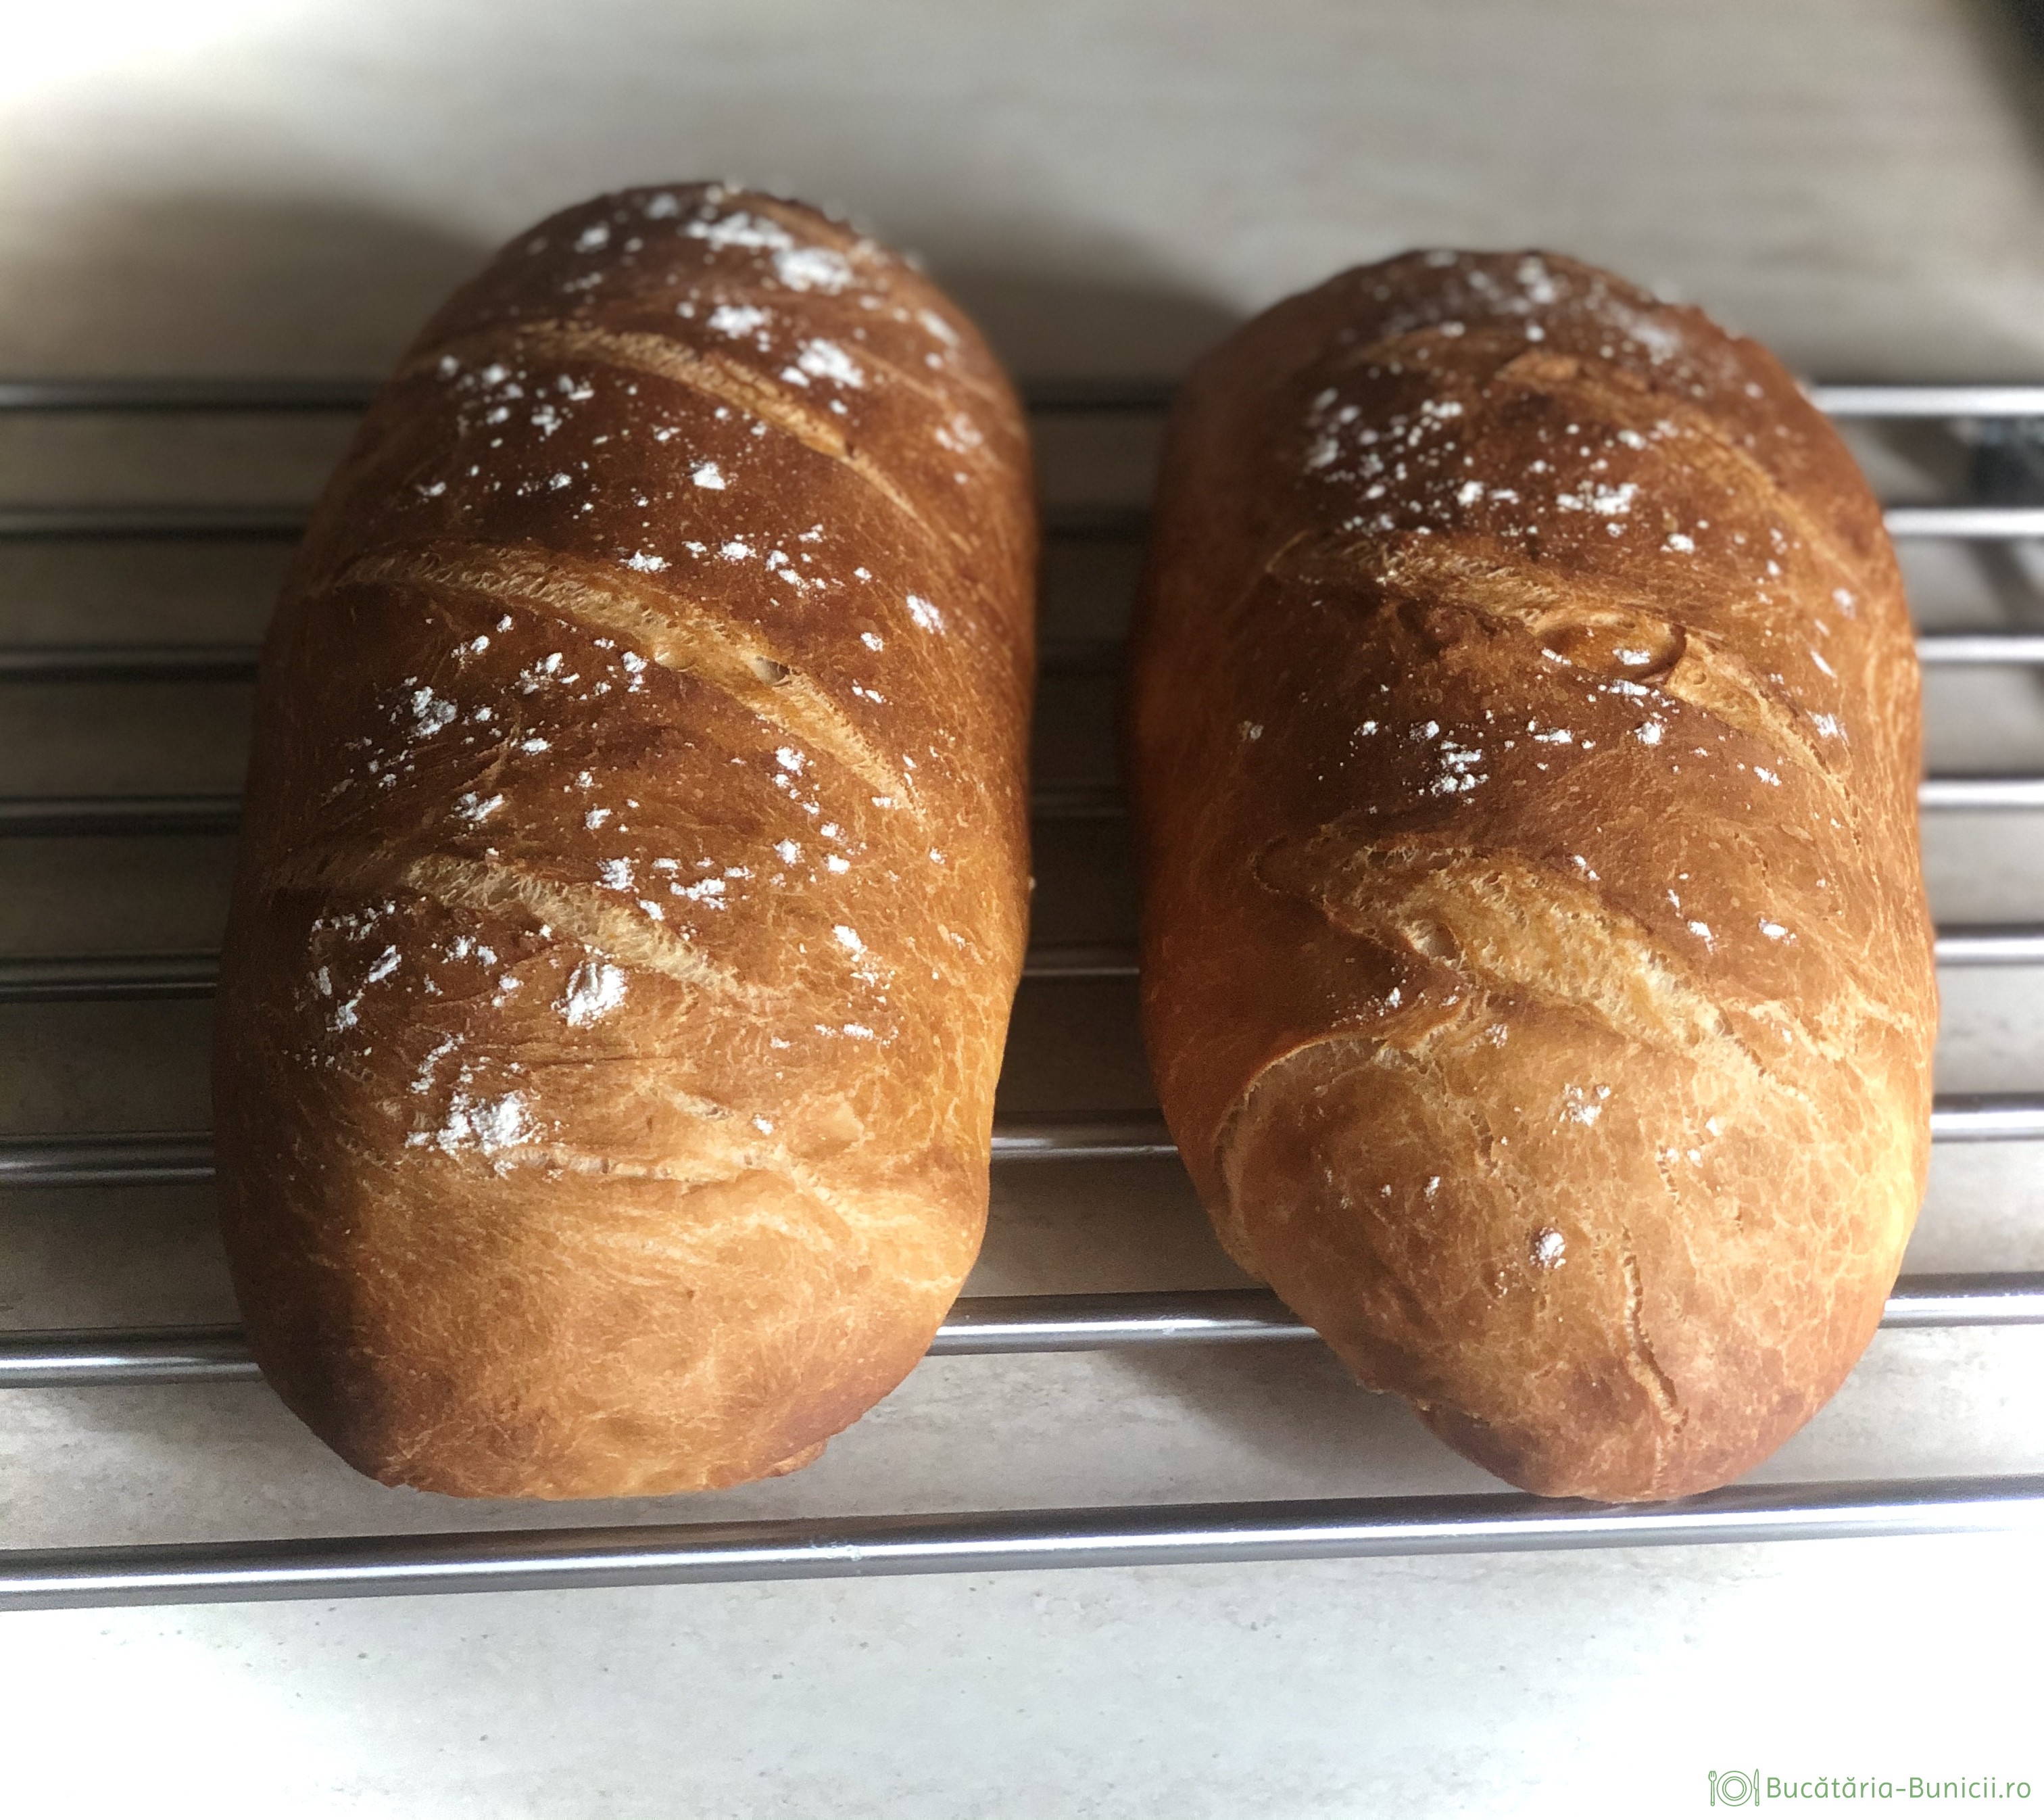 Pâine frământată la mașina de pâine și coaptă in cuptor